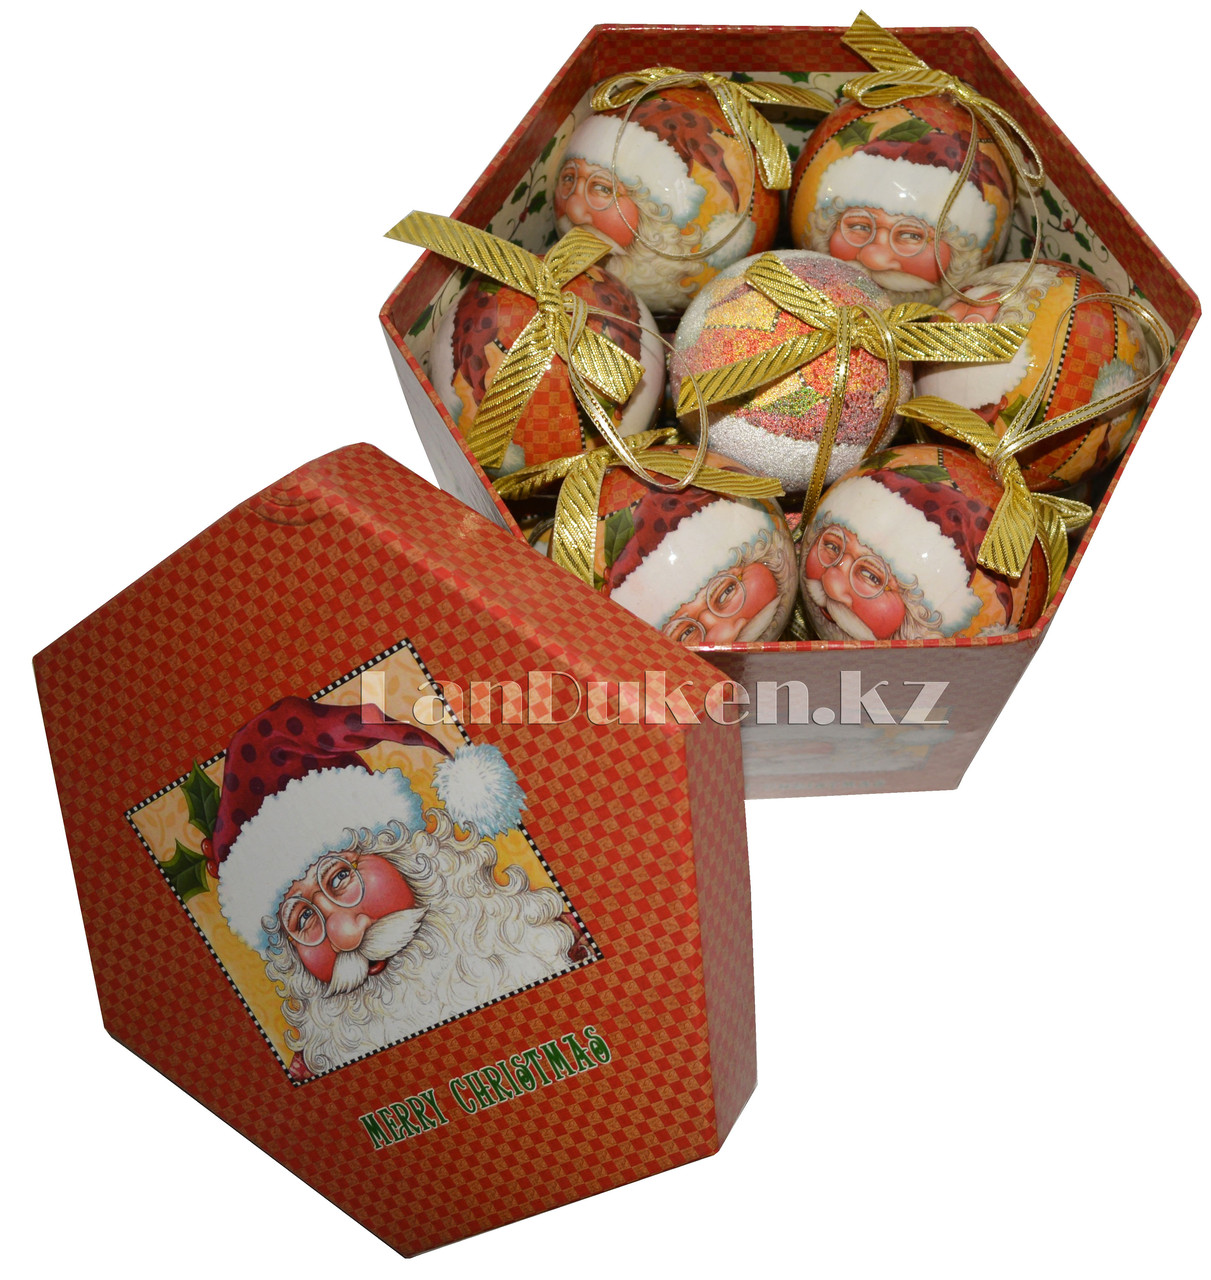 Набор новогодних шариков "папье-маше" 14 шт. в подарочной коробке "Merry Christmas" 70-070, фото 1